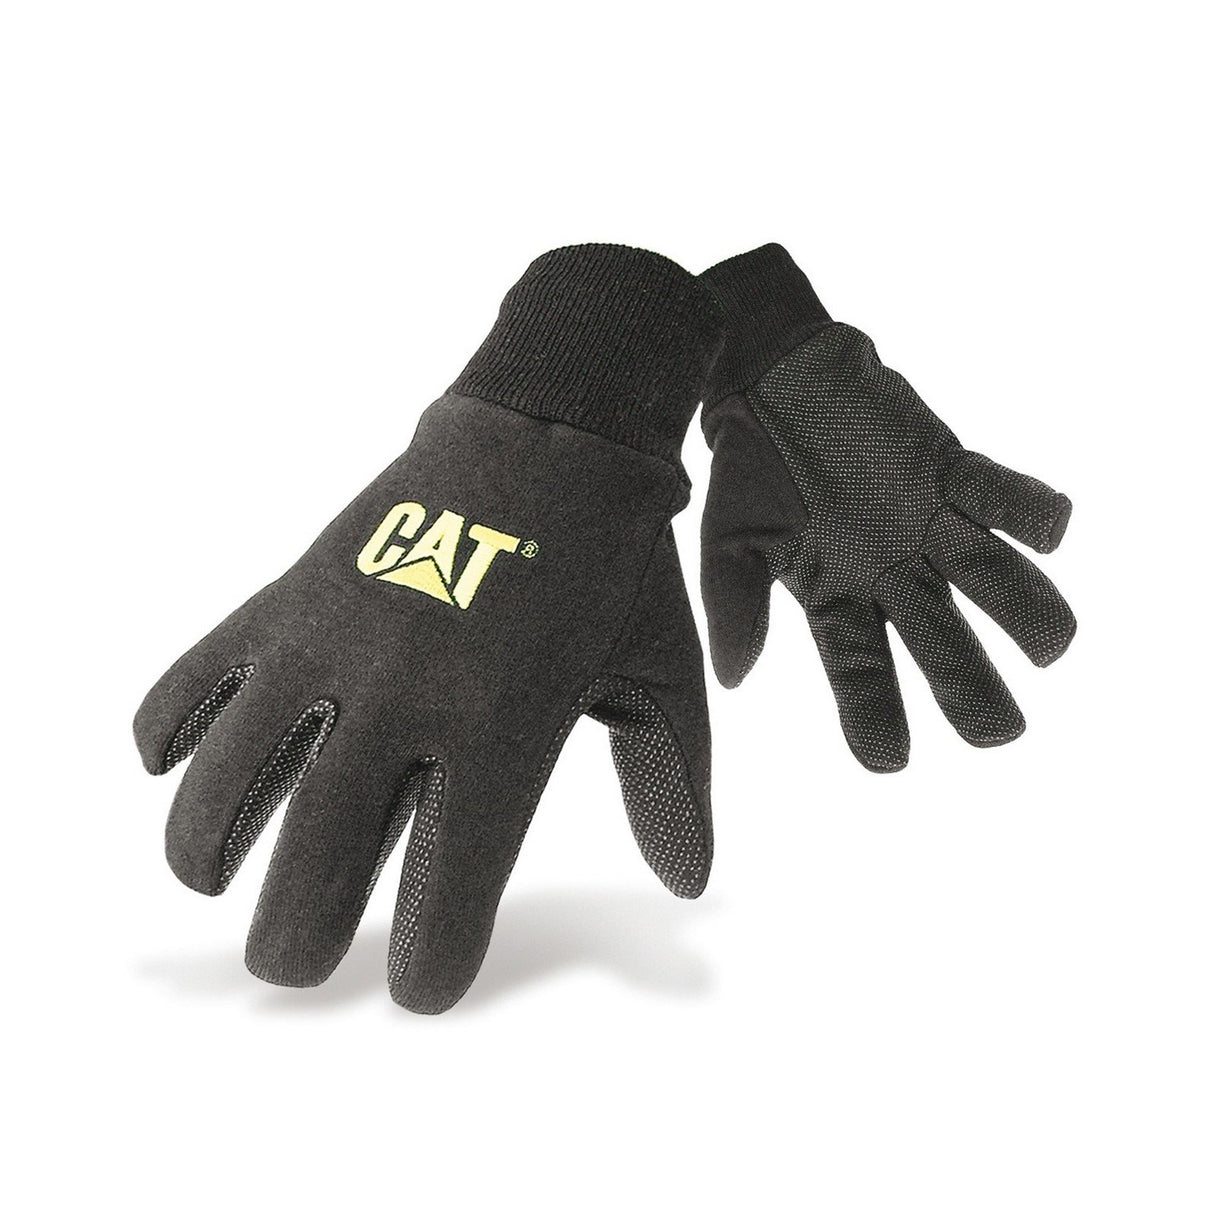 Caterpillar CAT 15400 Gloves